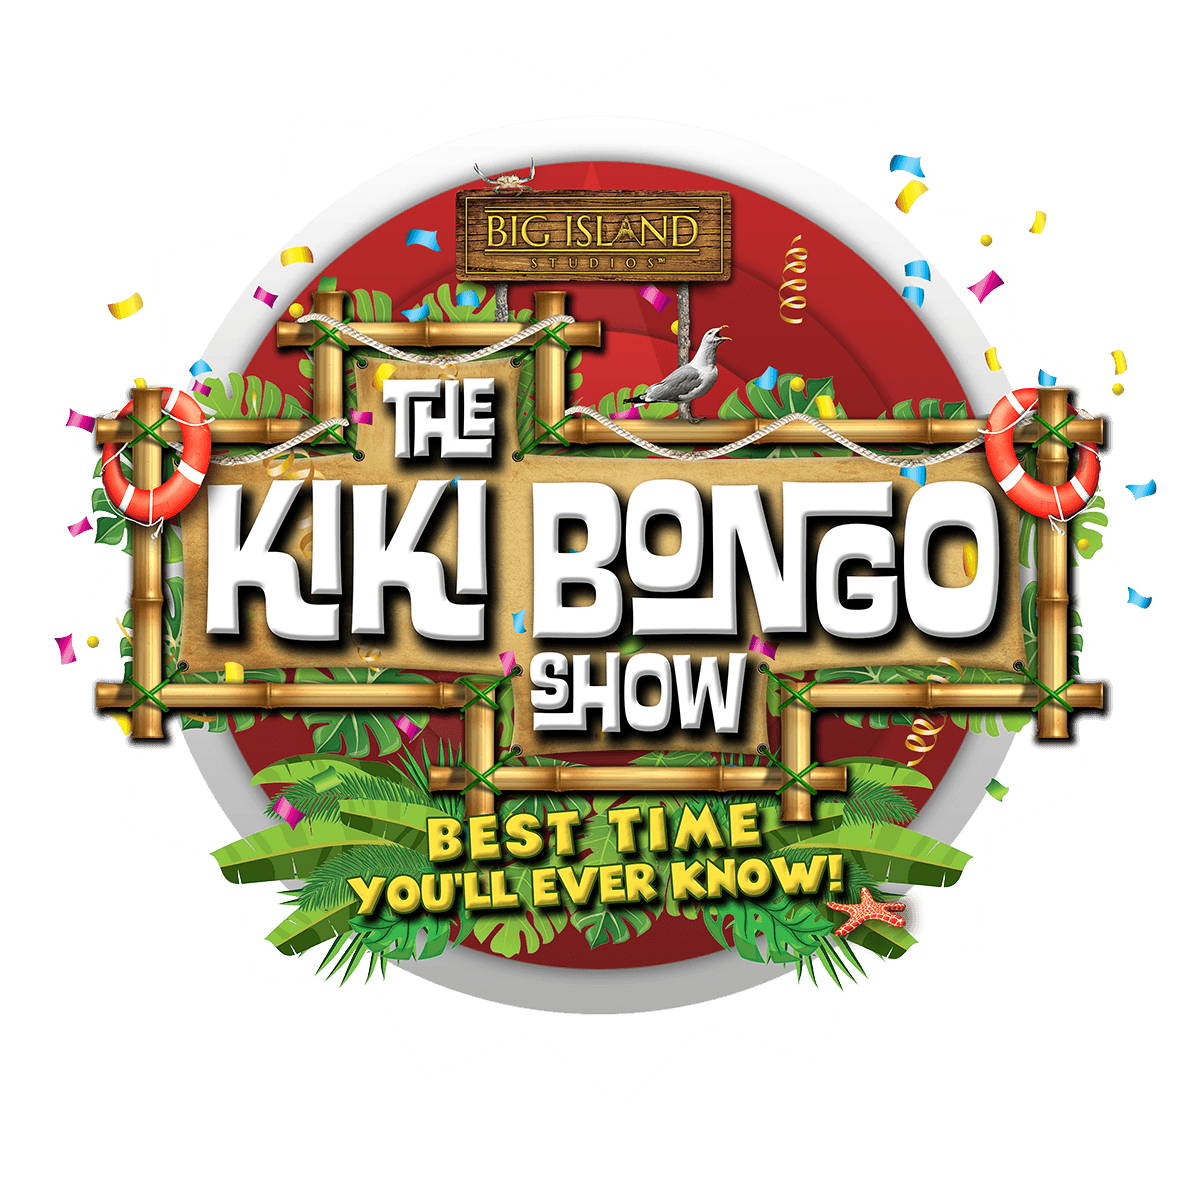 TheKikiBongoShow